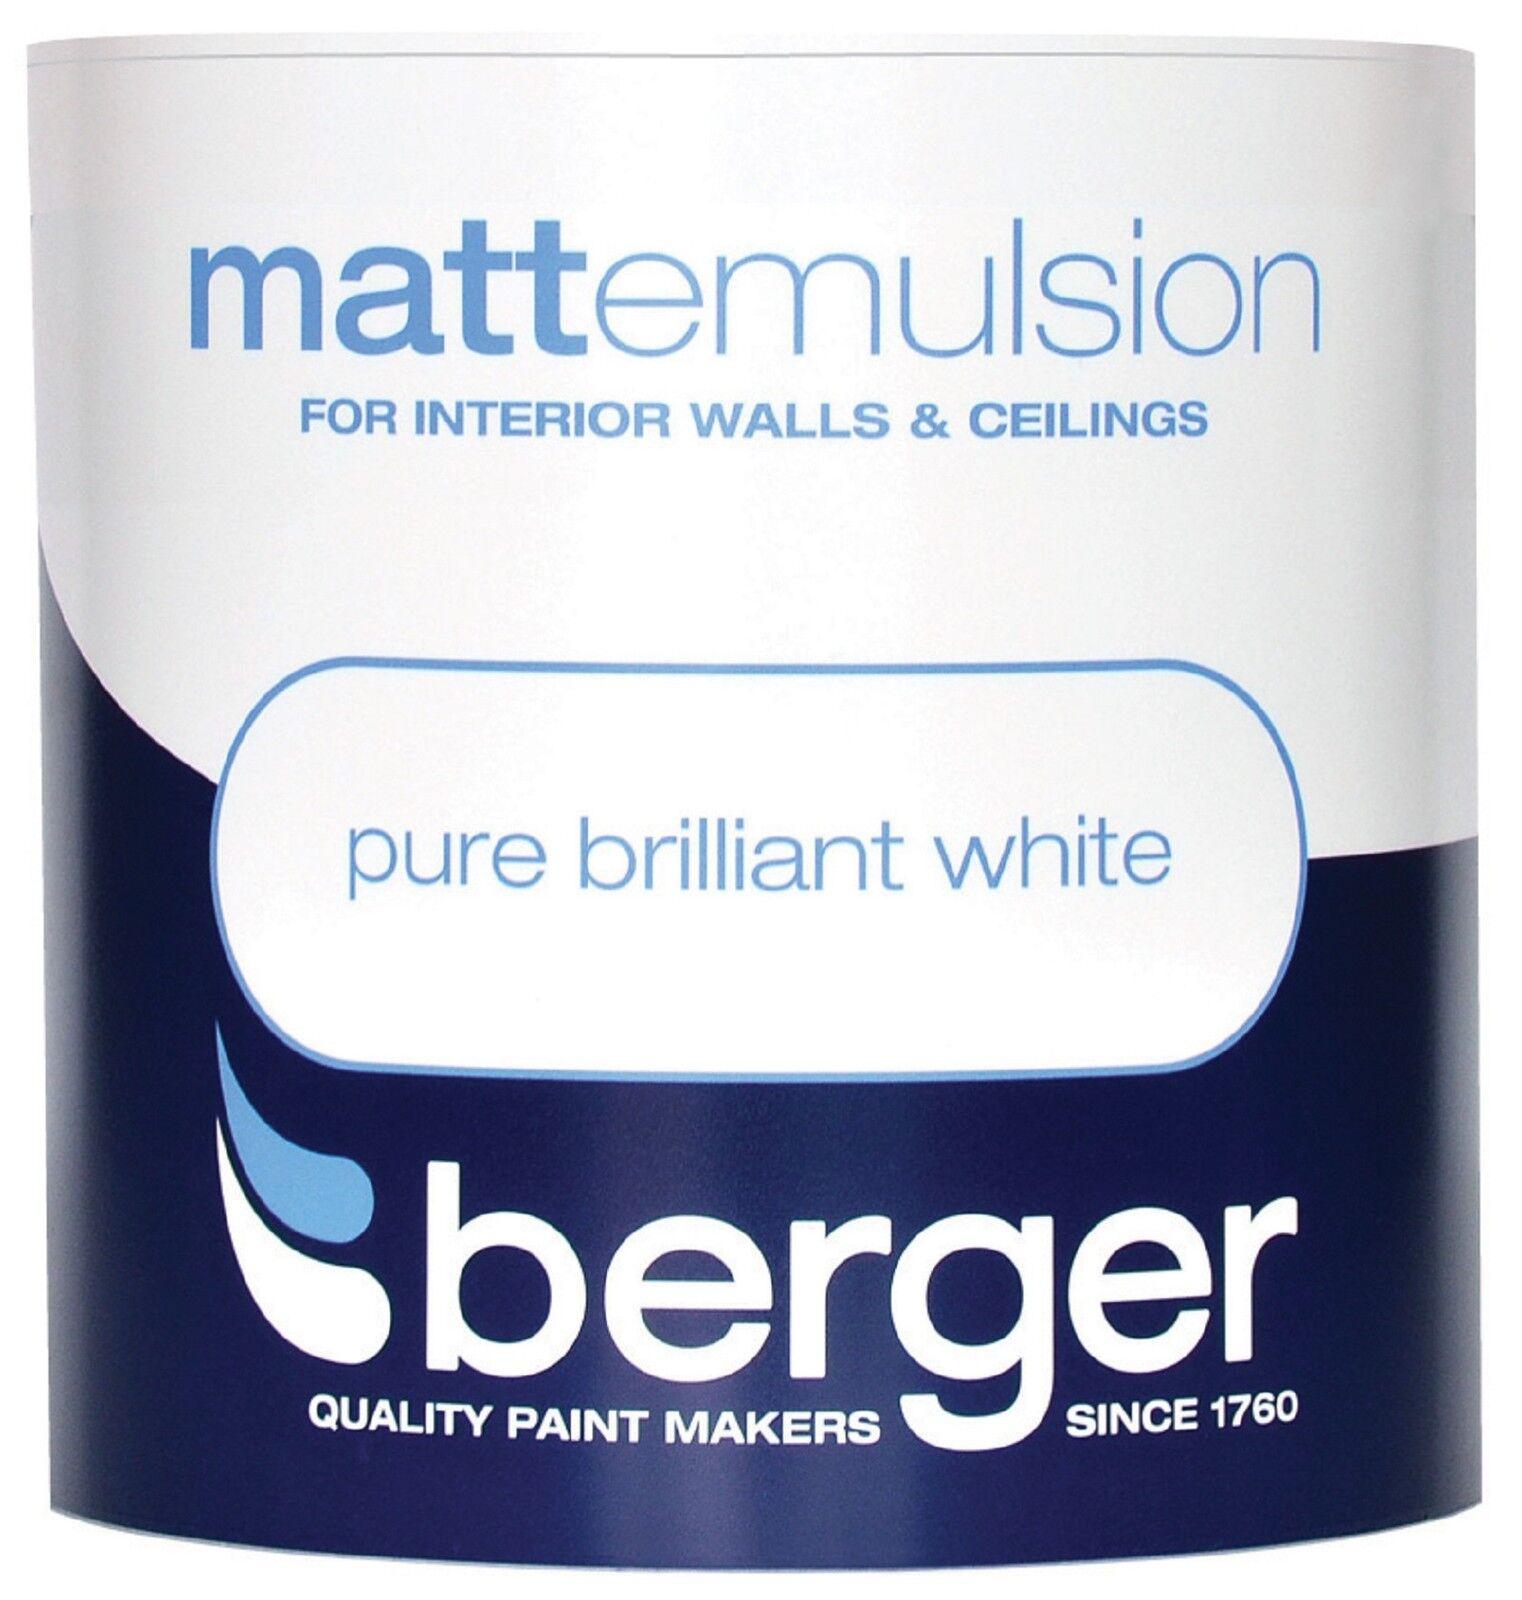 Berger Matt Emulsion White